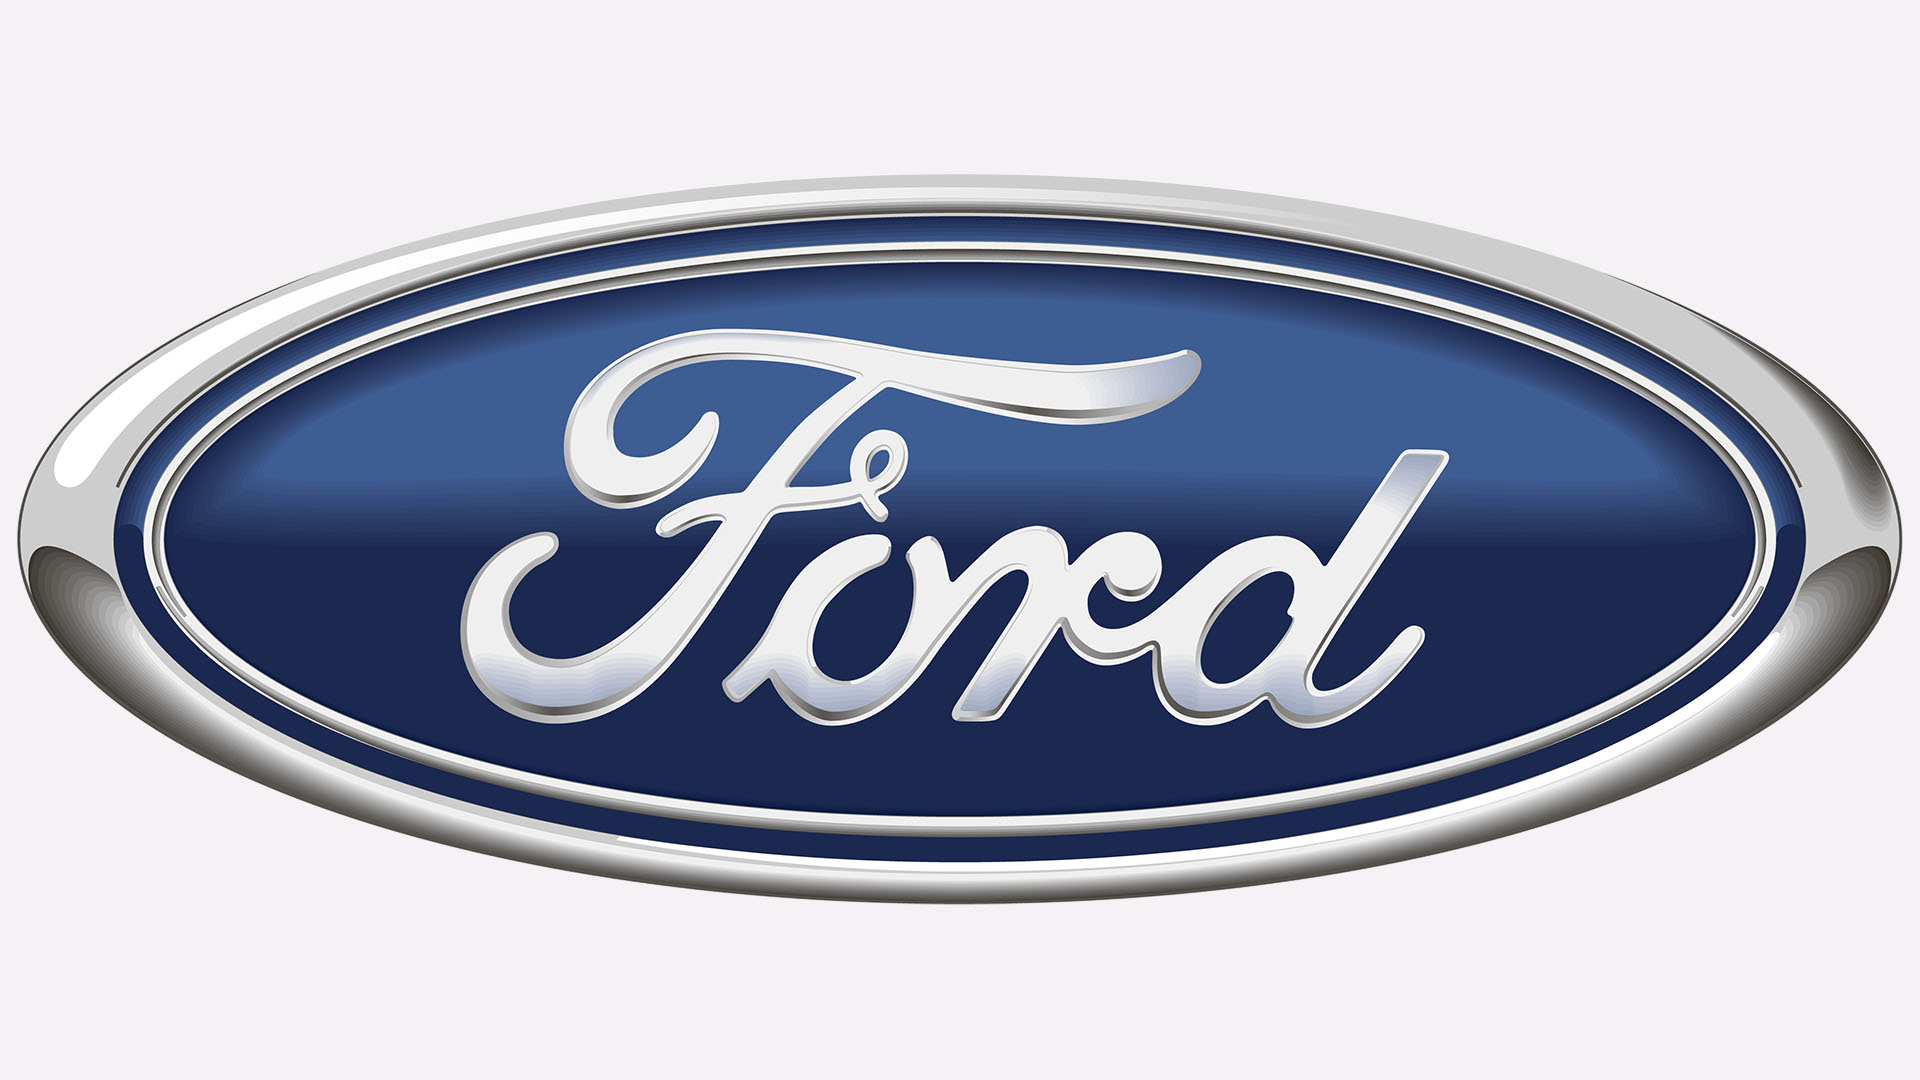 ford logo design